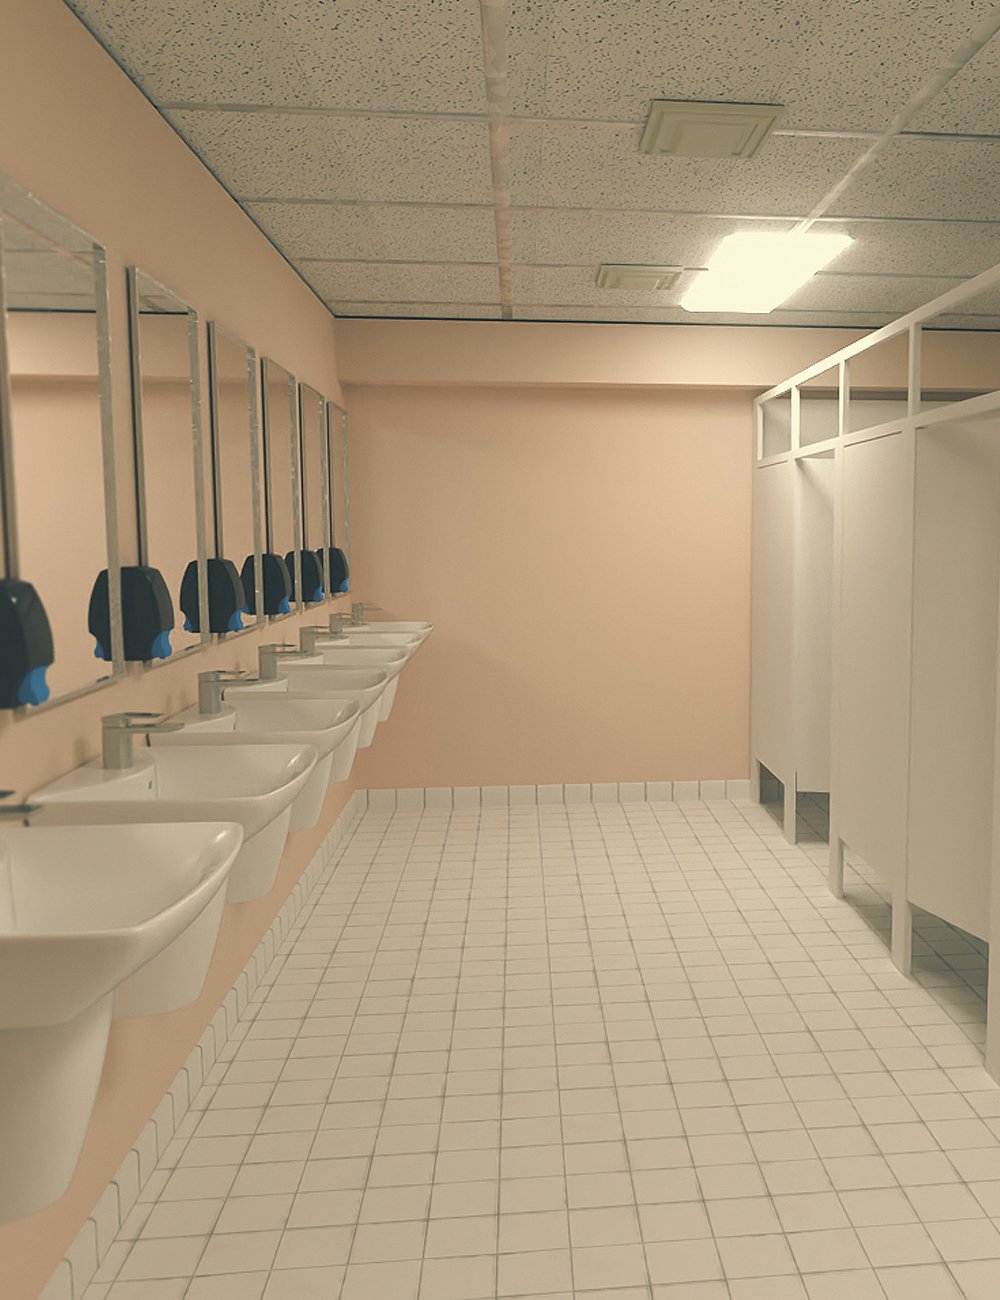 High School Bathroom by: kubramatic, 3D Models by Daz 3D